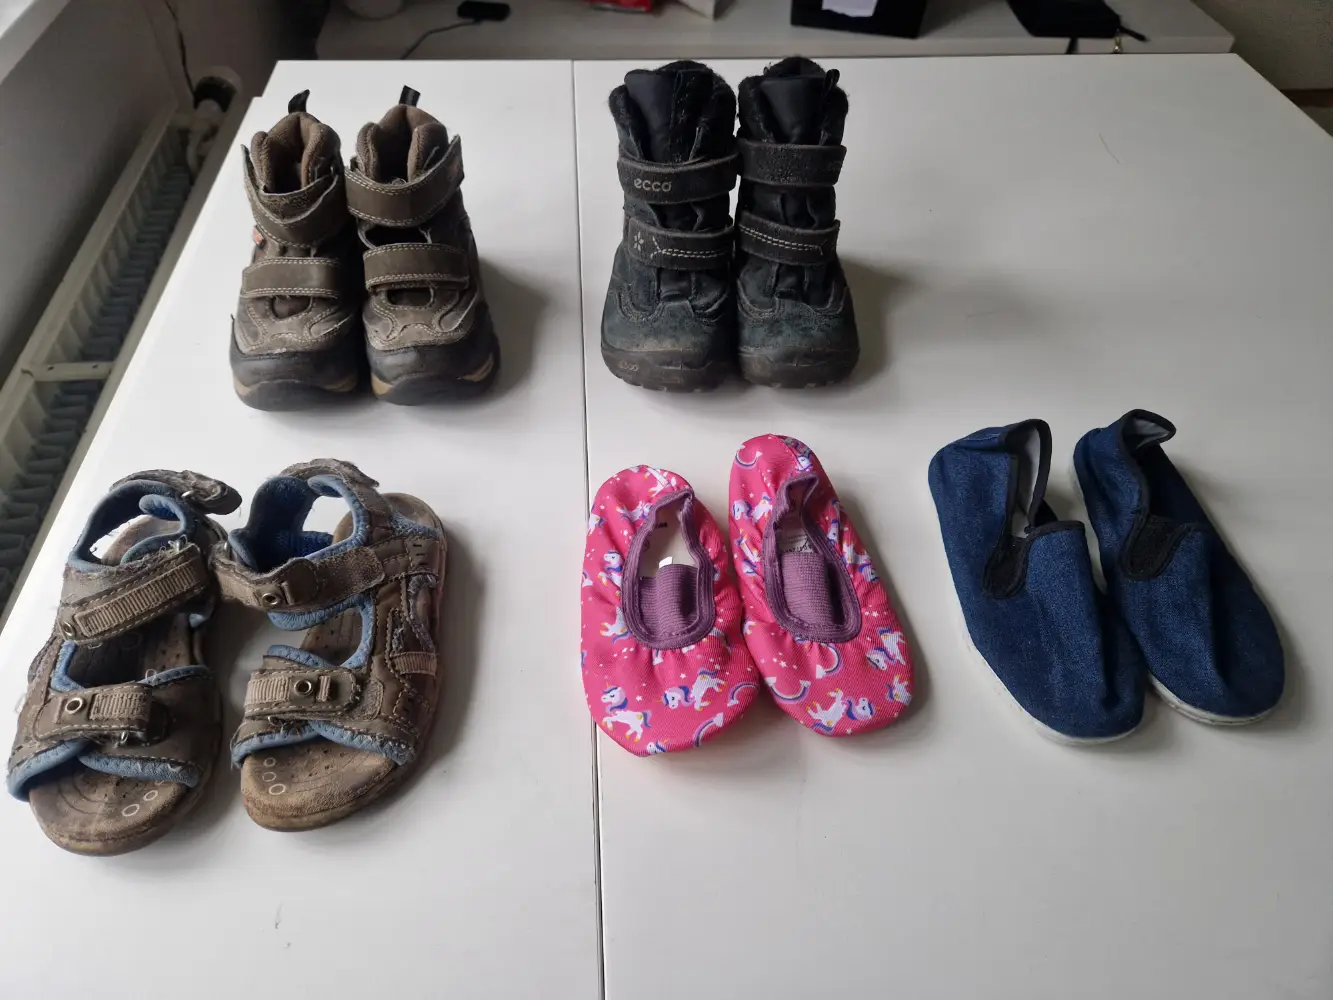 Køb Ecco, skofus, walk x m.fl 4 par sko i 25 af Helene på Reshopper · secondhand til børn, og